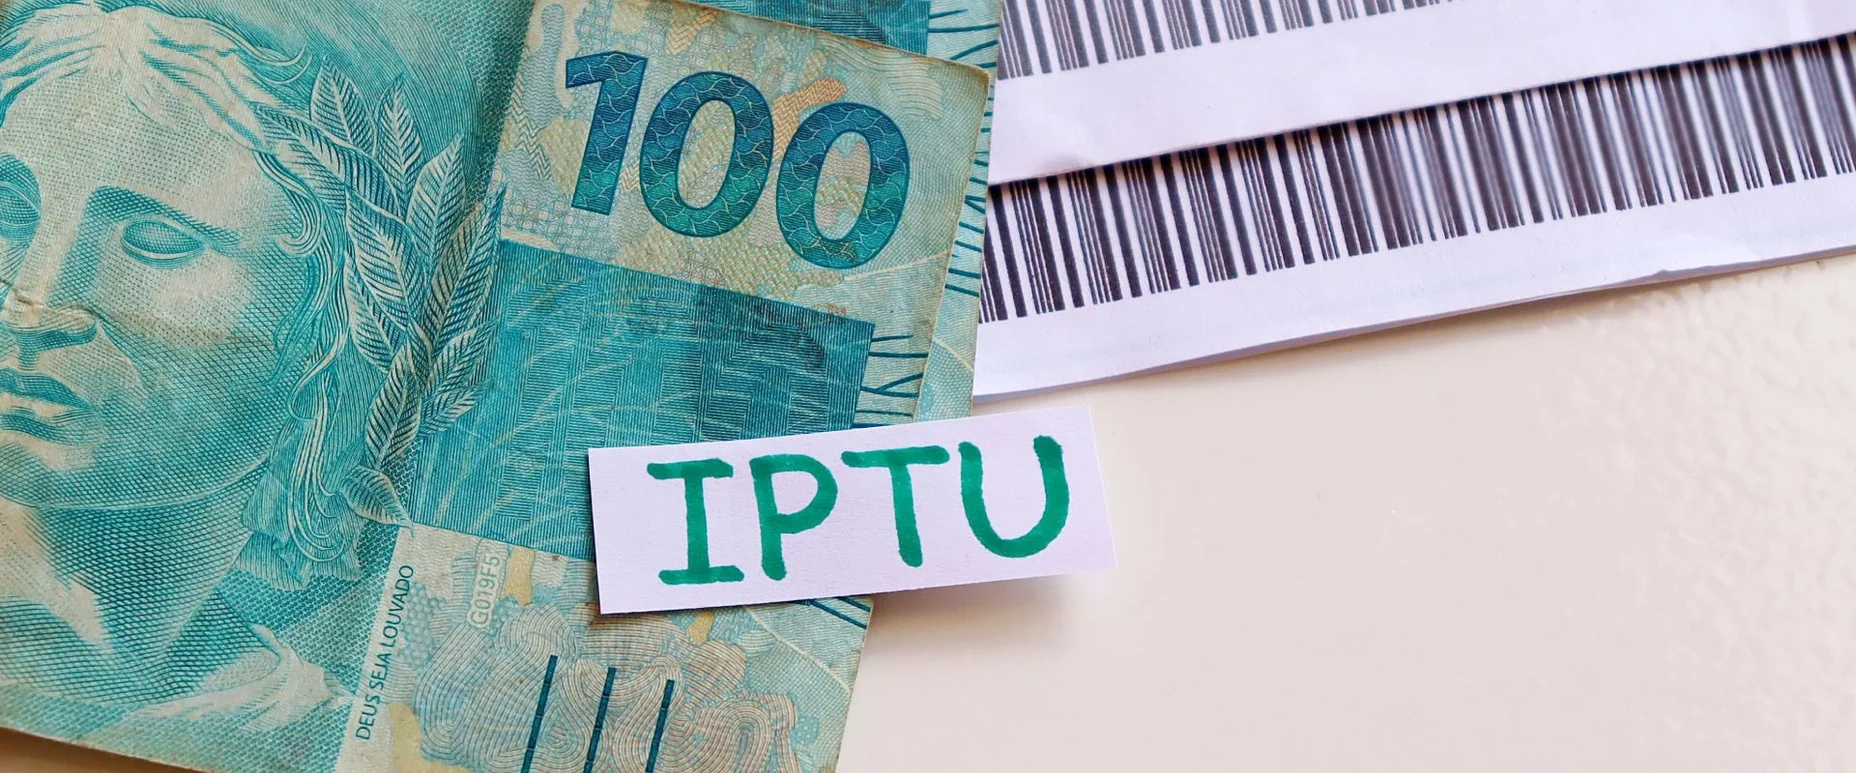 IPTU - Imposto Predial e Territorial Urbano. Conceito de pagamento.